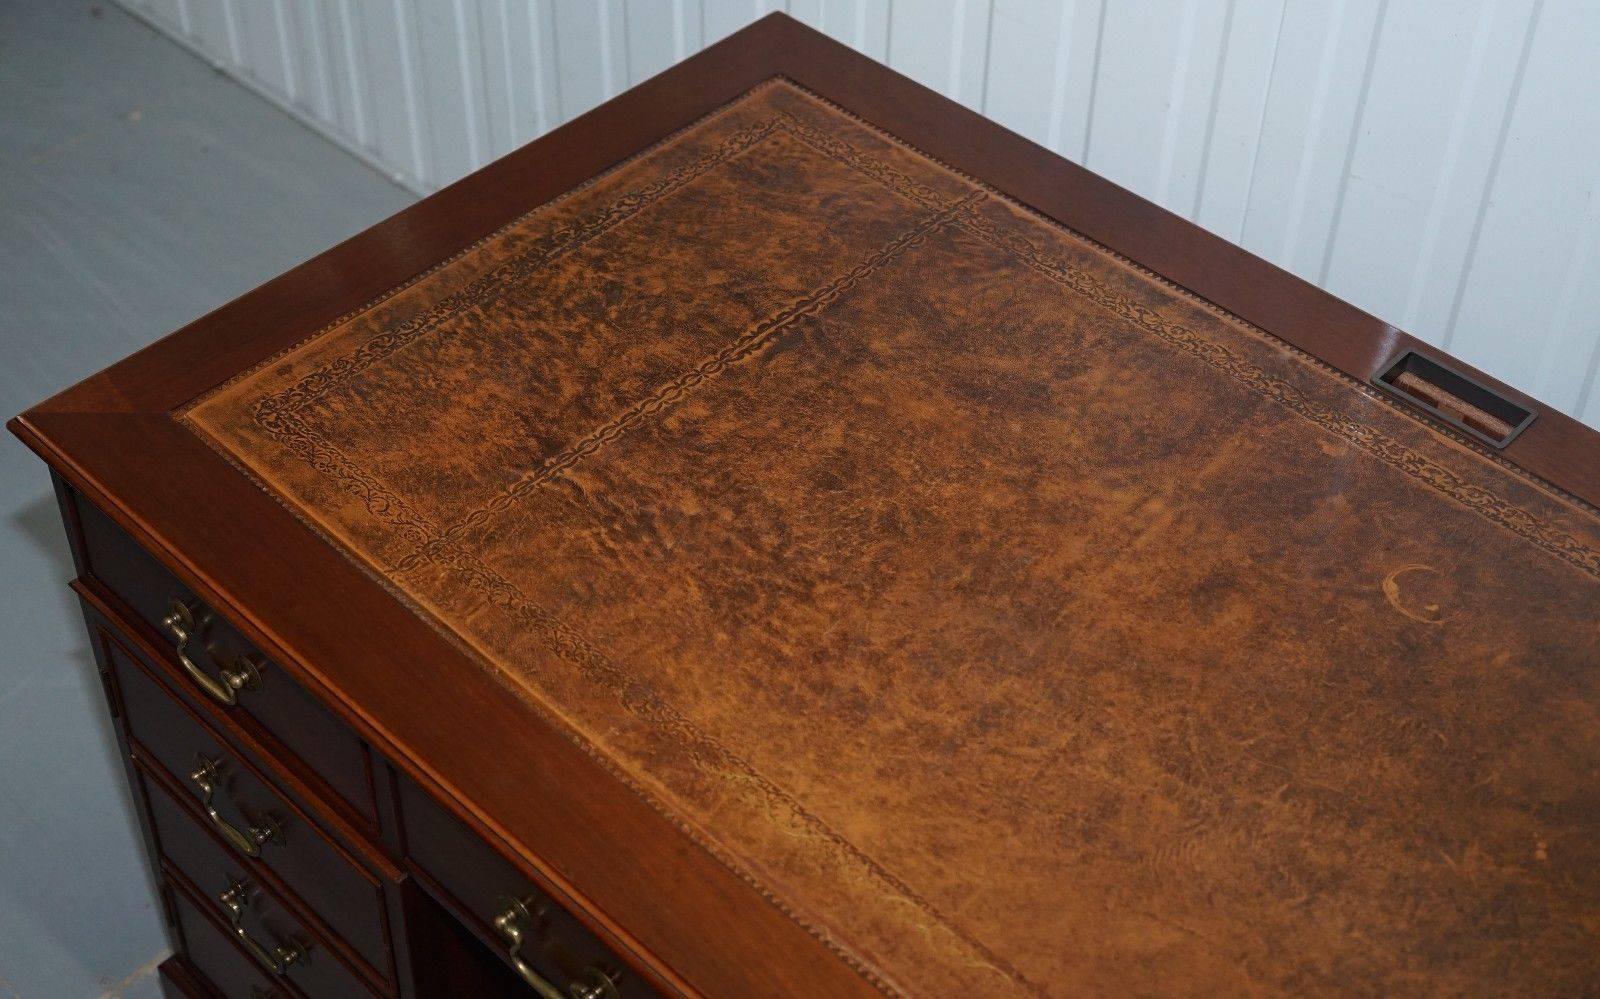 Regency Hardwood Twin Pedestal Partner Desk Leather Top Designed to House Computer For Sale